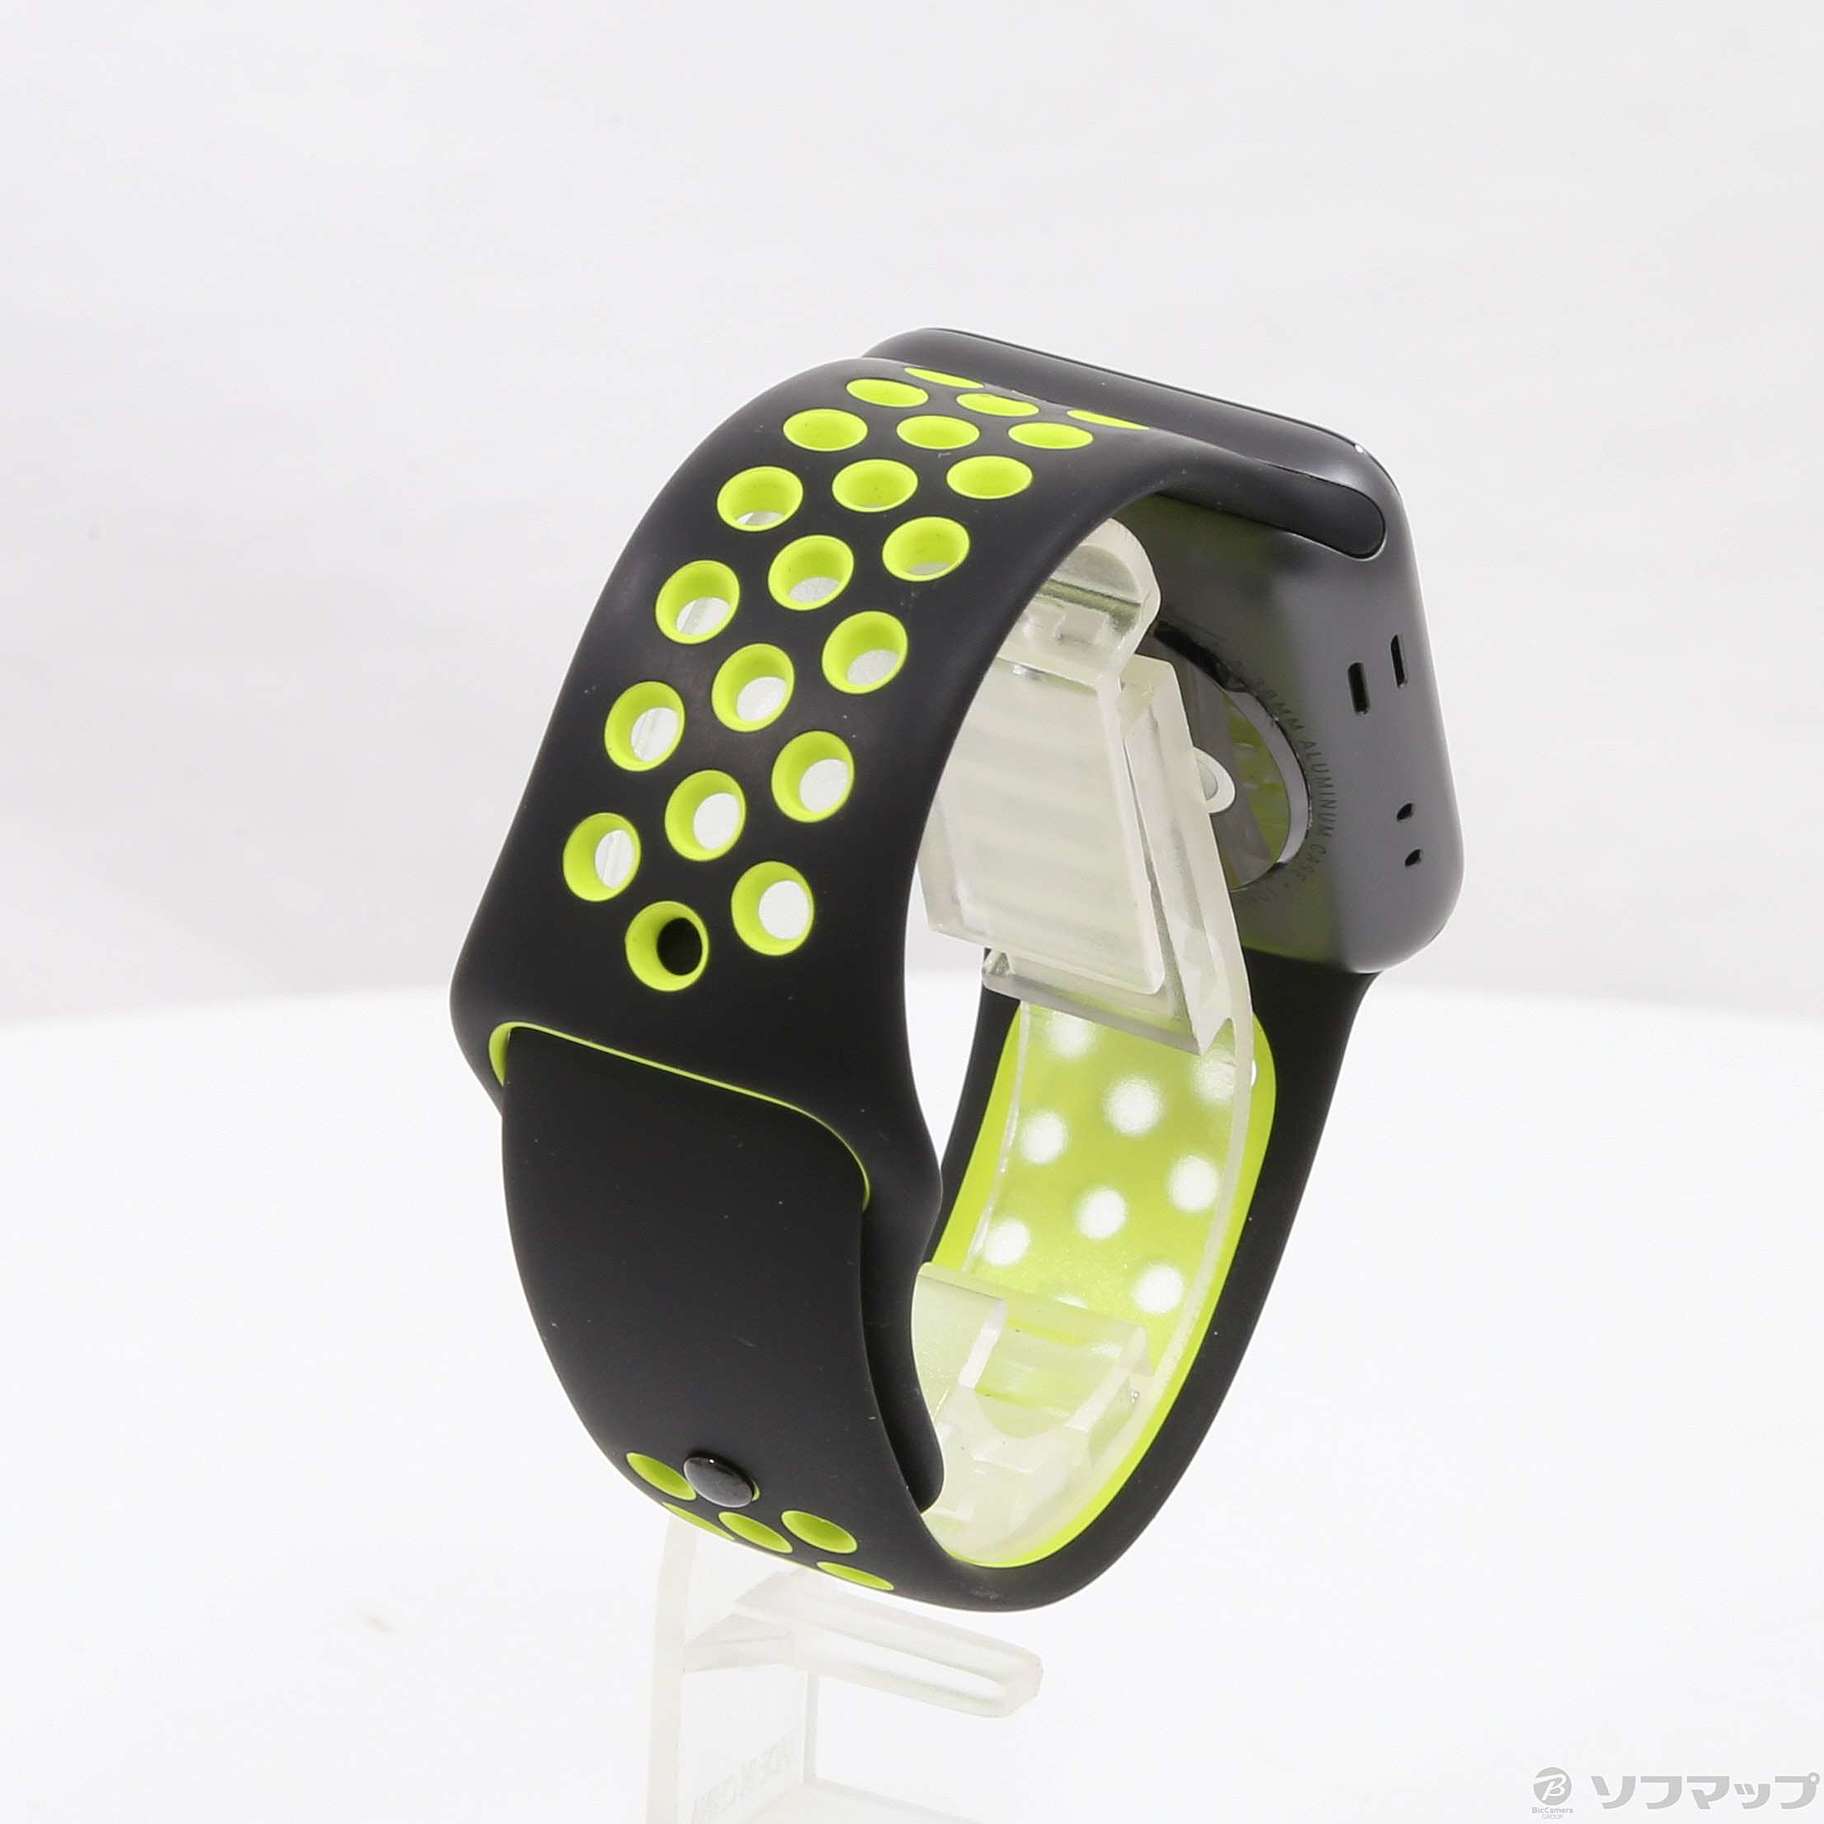 中古】Apple Watch Series 2 Nike+ 38mm スペースグレイアルミニウム ...